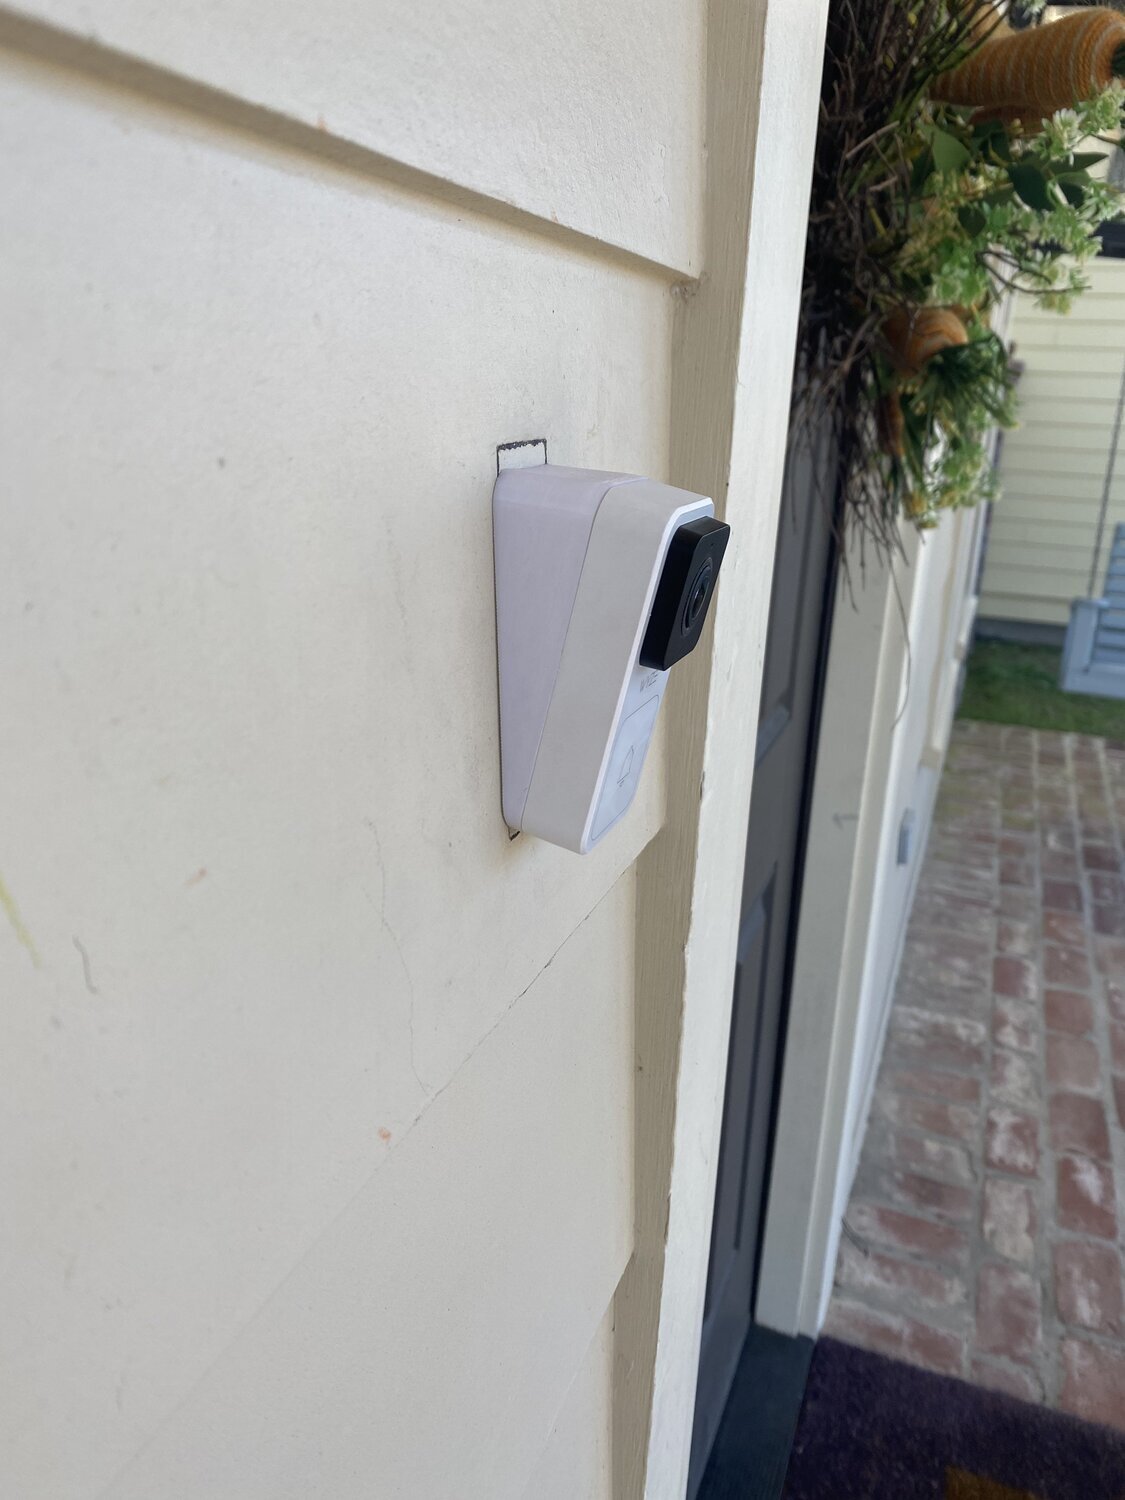 Wyze Doorbell Fixed Tilt Bracket 12 Degrees in Vertical